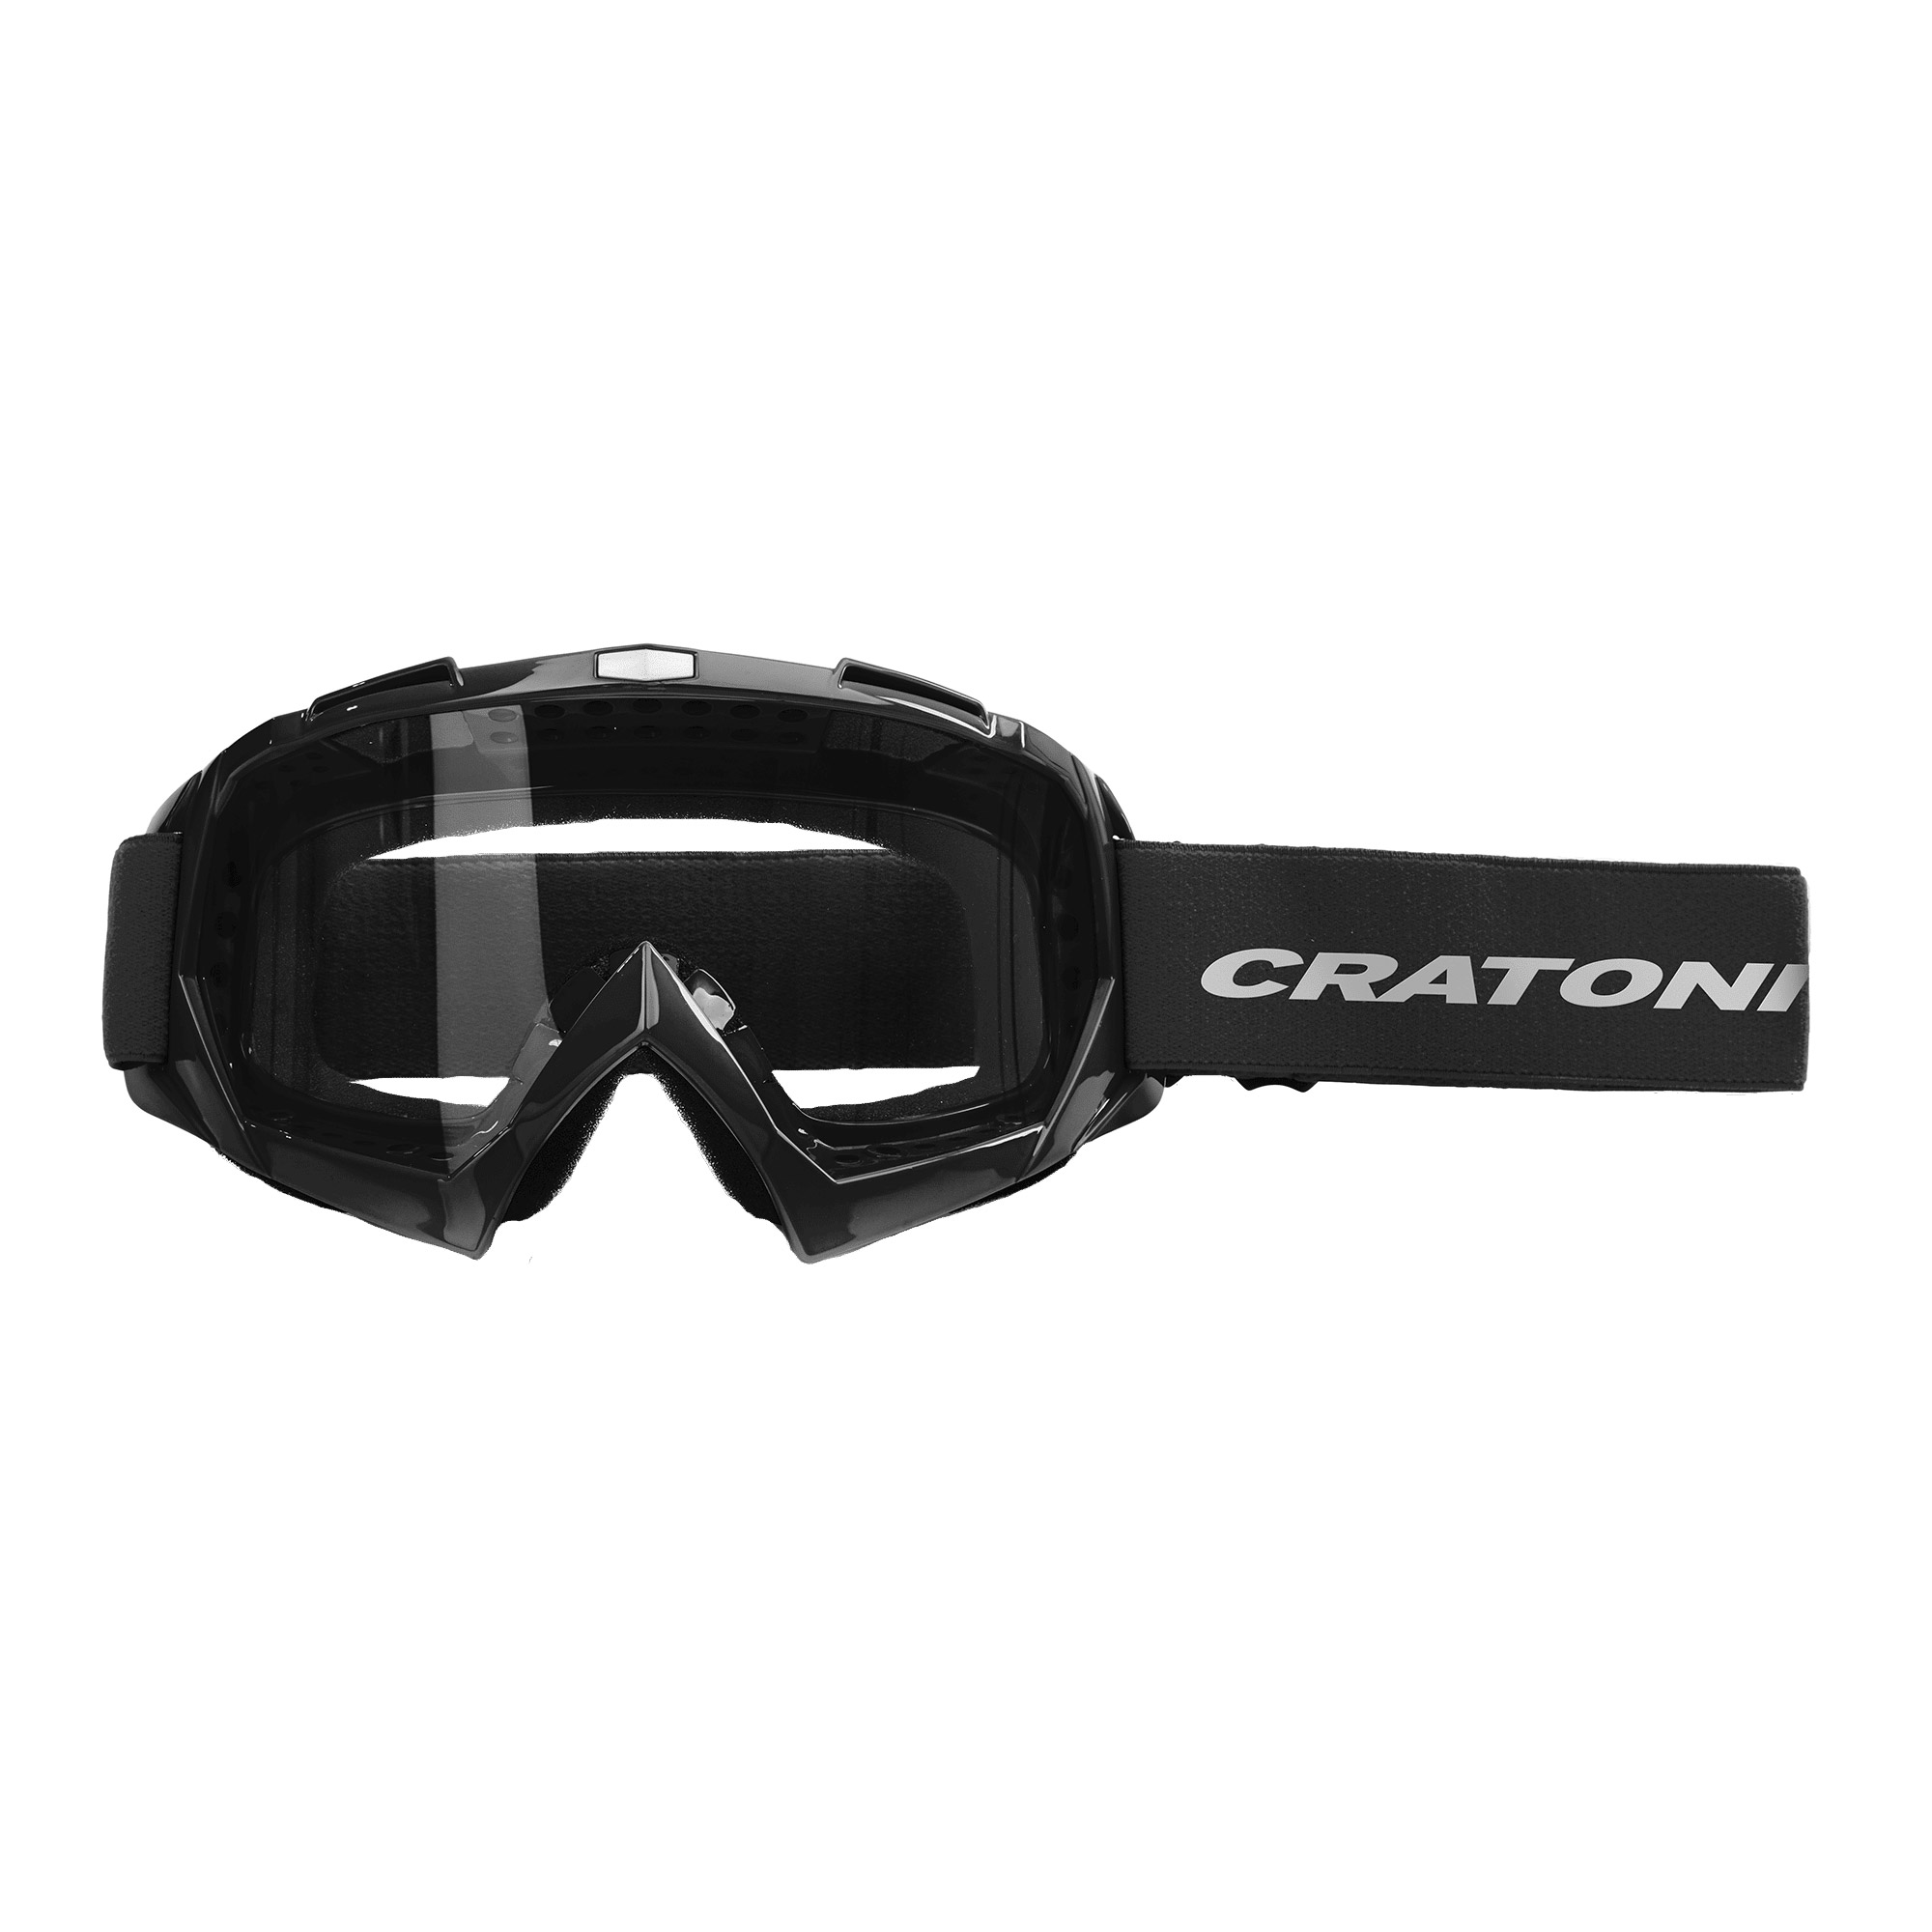 Cratoni C-Rage Crossbrille MTB Goggle